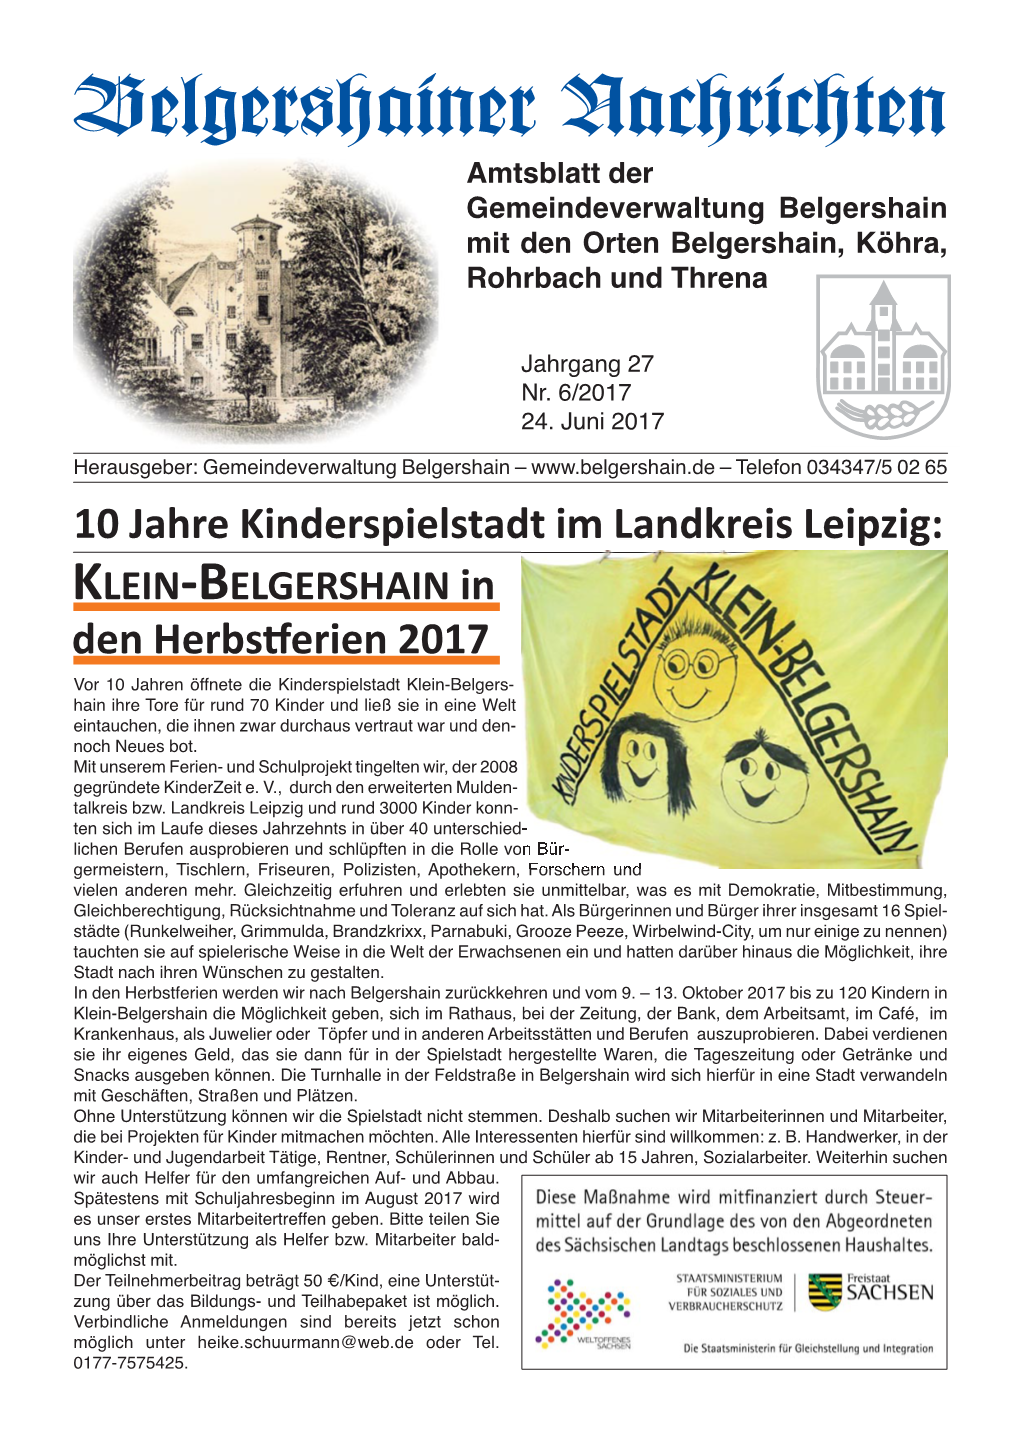 Belgershainer Nachrichten Amtsblatt Der Gemeindeverwaltung Belgershain Mit Den Orten Belgershain, Köhra, Rohrbach Und Threna